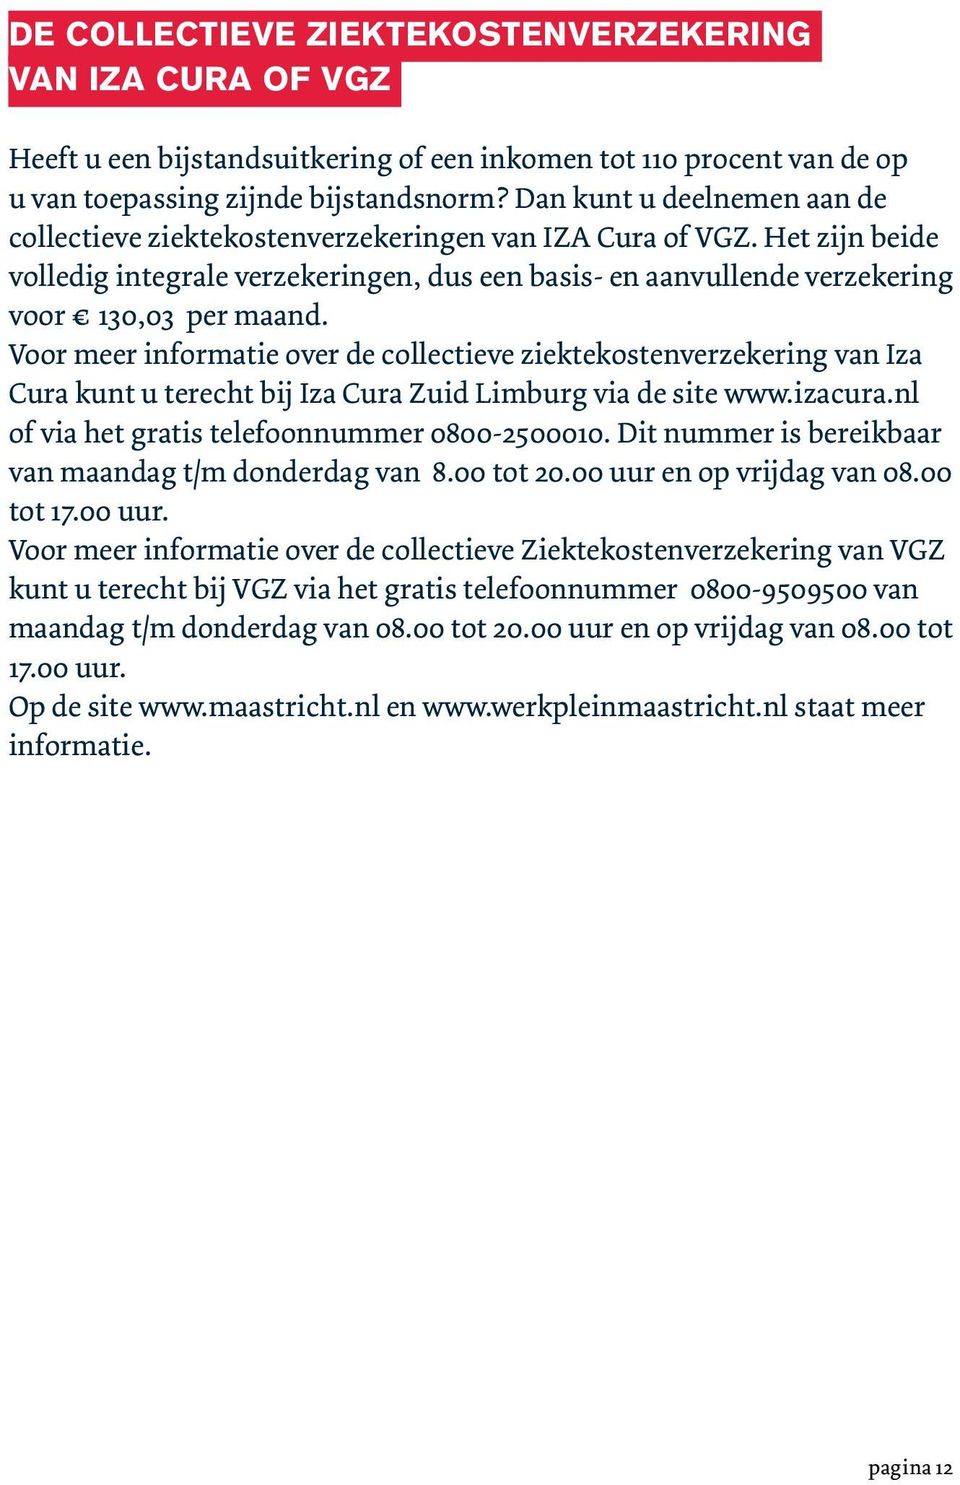 Voor meer informatie over de collectieve ziektekostenverzekering van Iza Cura kunt u terecht bij Iza Cura Zuid Limburg via de site www.izacura.nl of via het gratis telefoonnummer 0800-2500010.